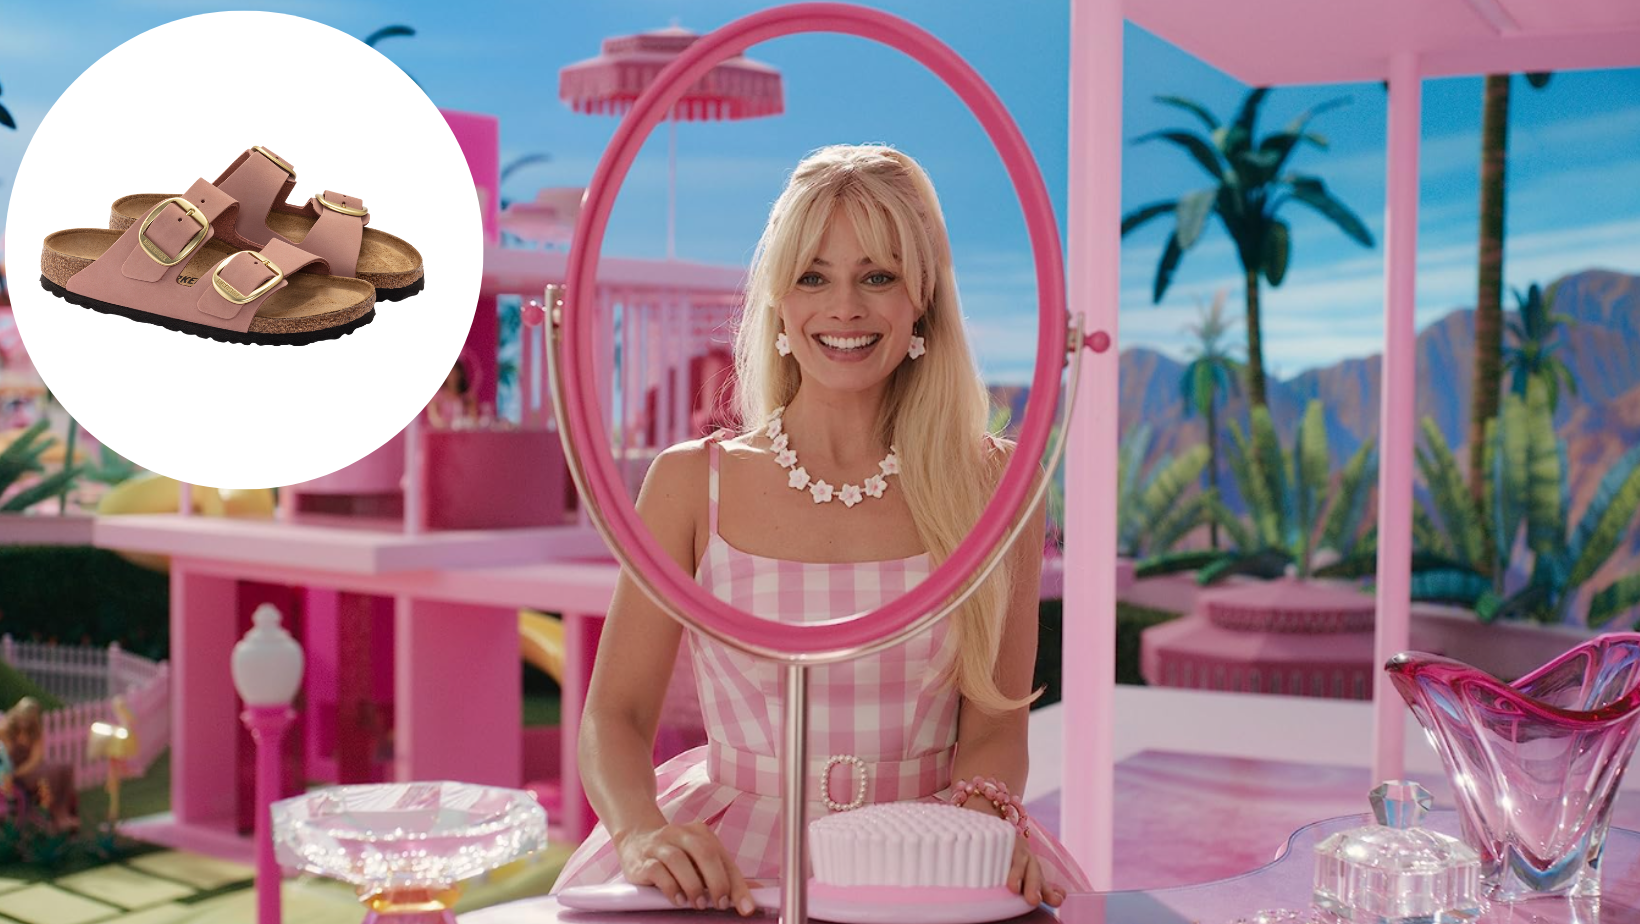 Pronašli smo Barbie ružičaste Birkenstock natikače koje Margot Robbie nosi u filmu